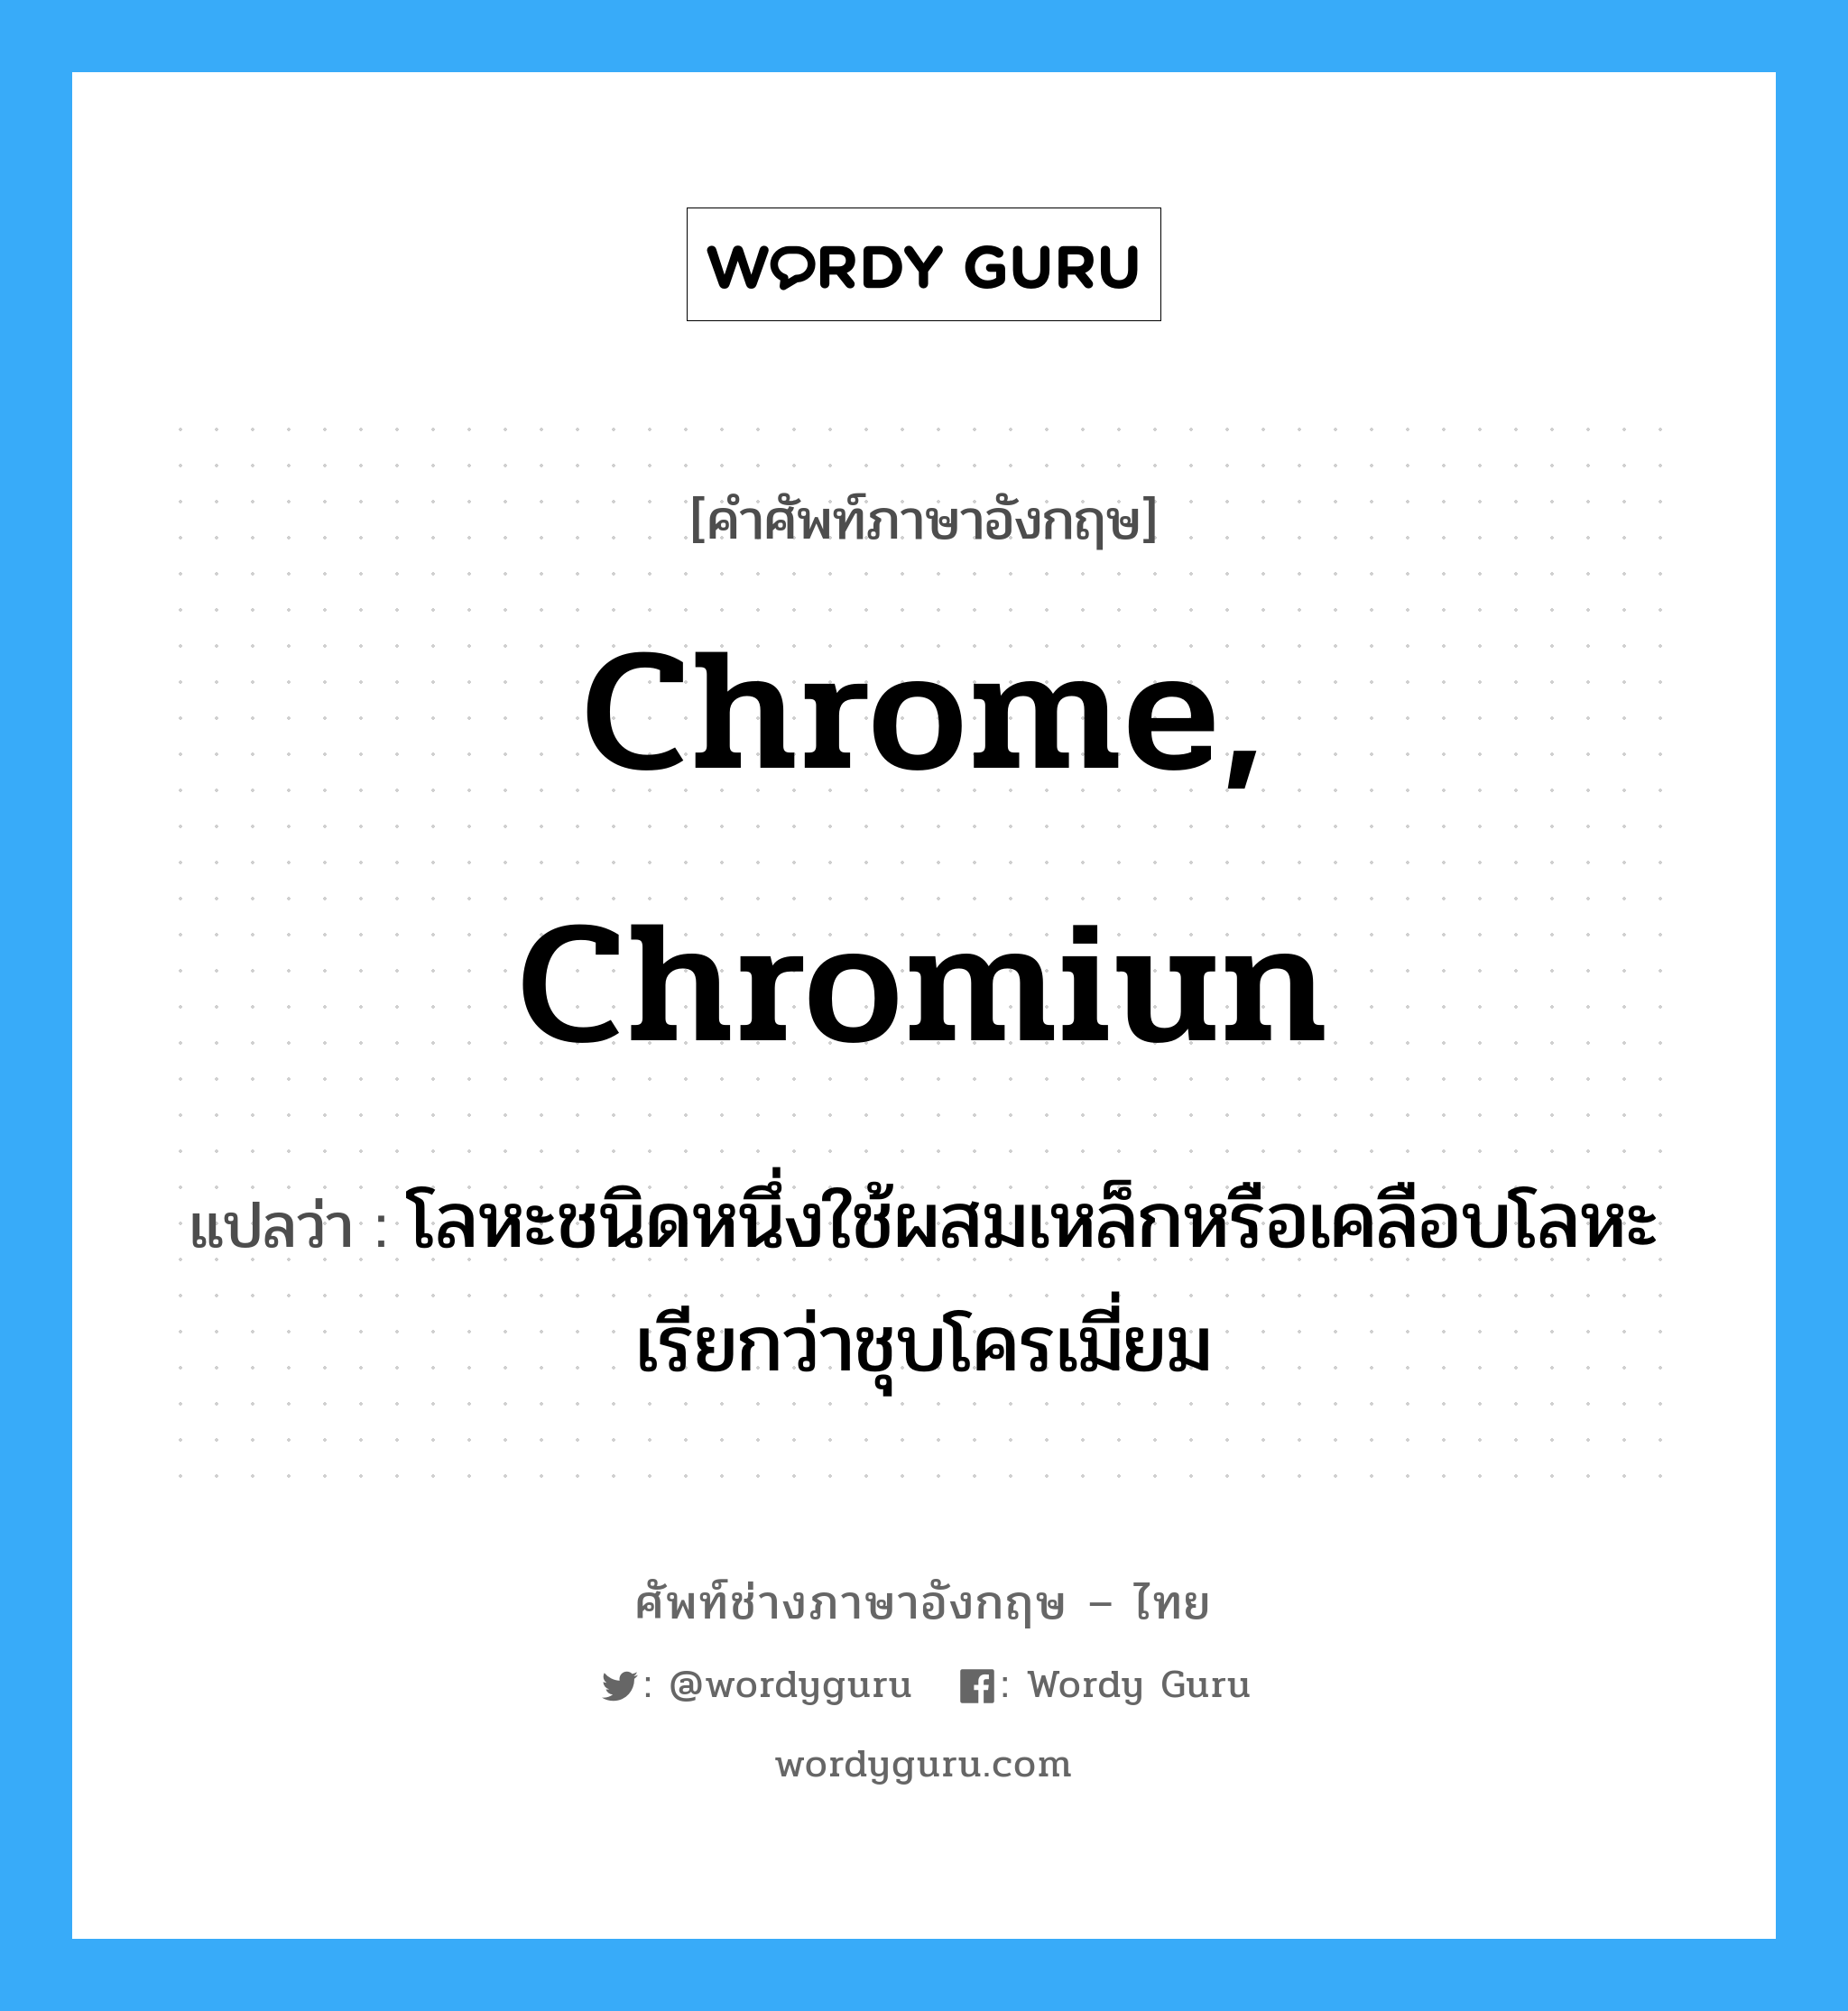 chrome, chromiun แปลว่า?, คำศัพท์ช่างภาษาอังกฤษ - ไทย chrome, chromiun คำศัพท์ภาษาอังกฤษ chrome, chromiun แปลว่า โลหะชนิดหนึ่งใช้ผสมเหล็กหรือเคลือบโลหะ เรียกว่าชุบโครเมี่ยม